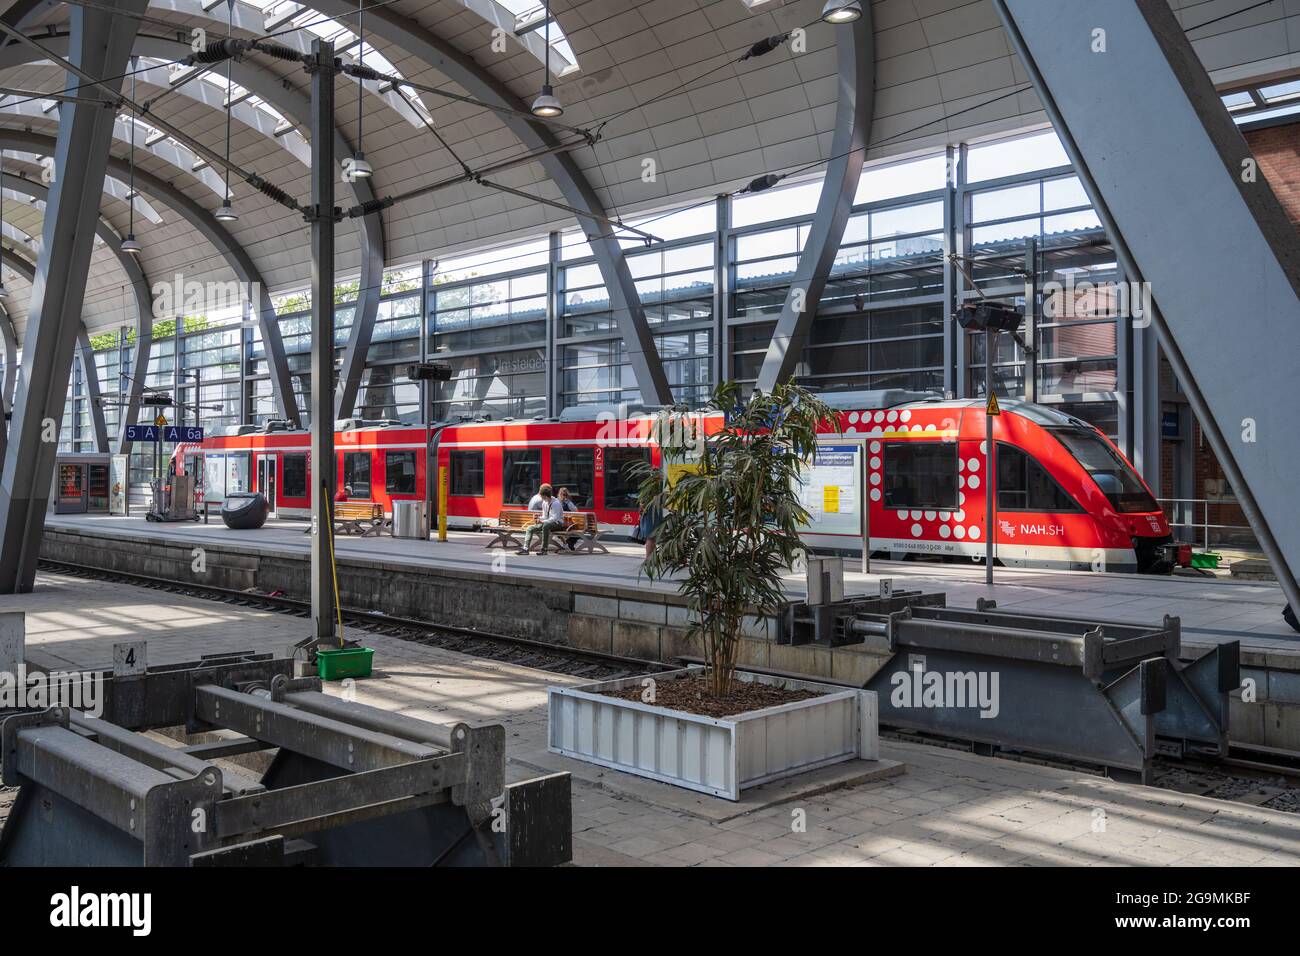 Kiel Hotspot für Kreuzfahrten in die Ostsee Innenaufnahme Hauptbahnhof Kiel im Sommer zur Reisesaison Stock Photo